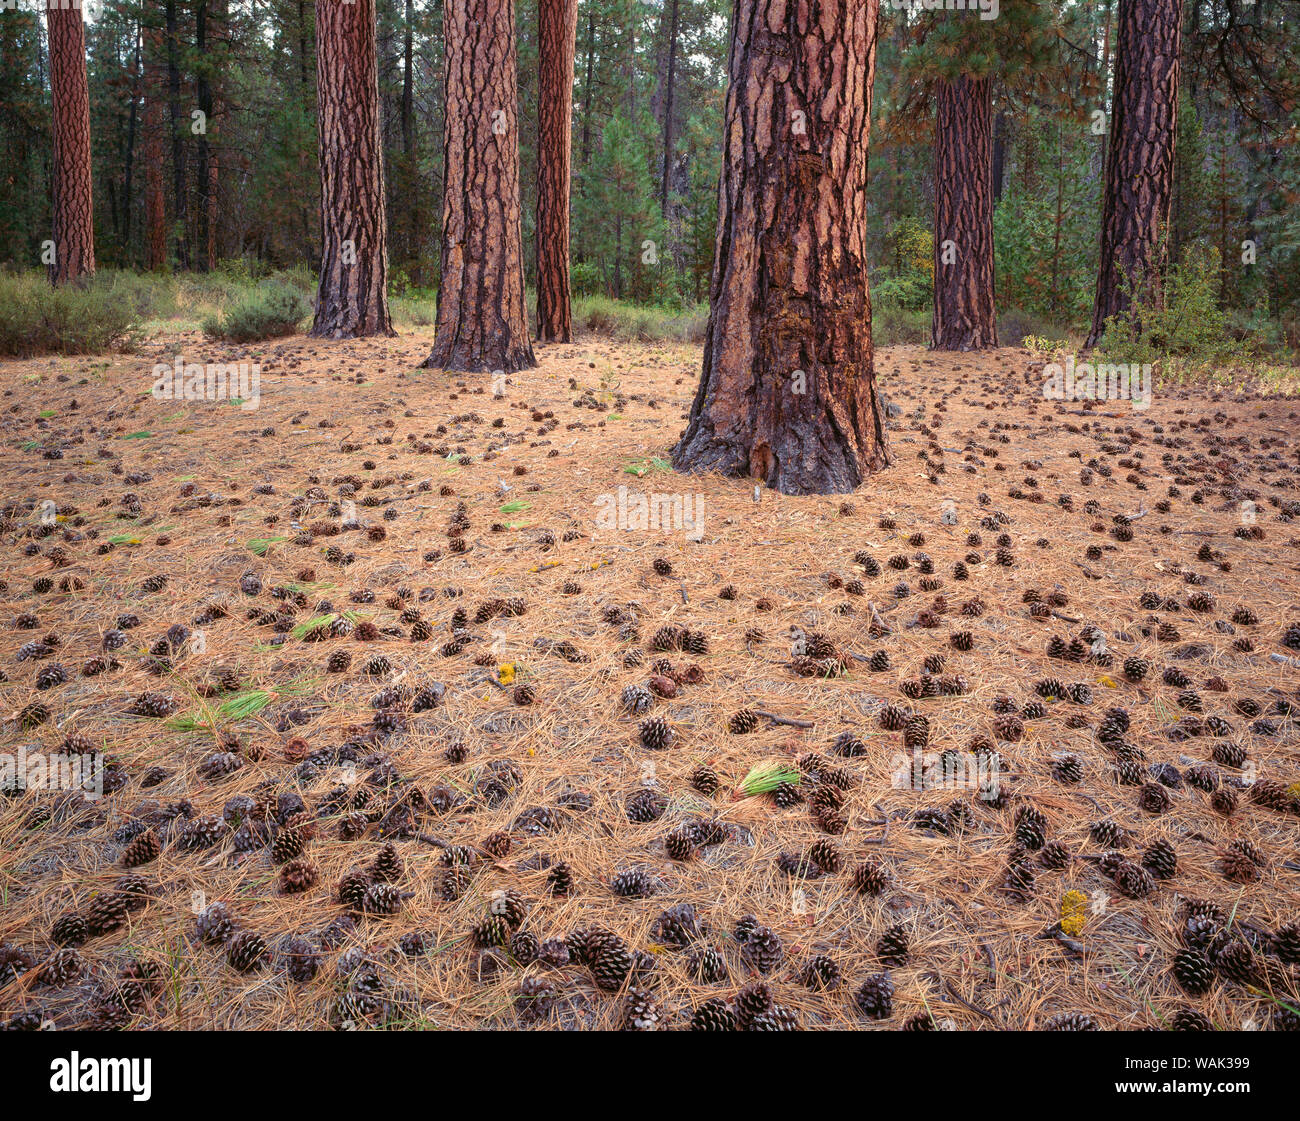 Stati Uniti d'America, Oregon, Newberry nazionale monumento di origine vulcanica. Coni, gli aghi e le linee colorate della ponderosa pine trees. Foto Stock